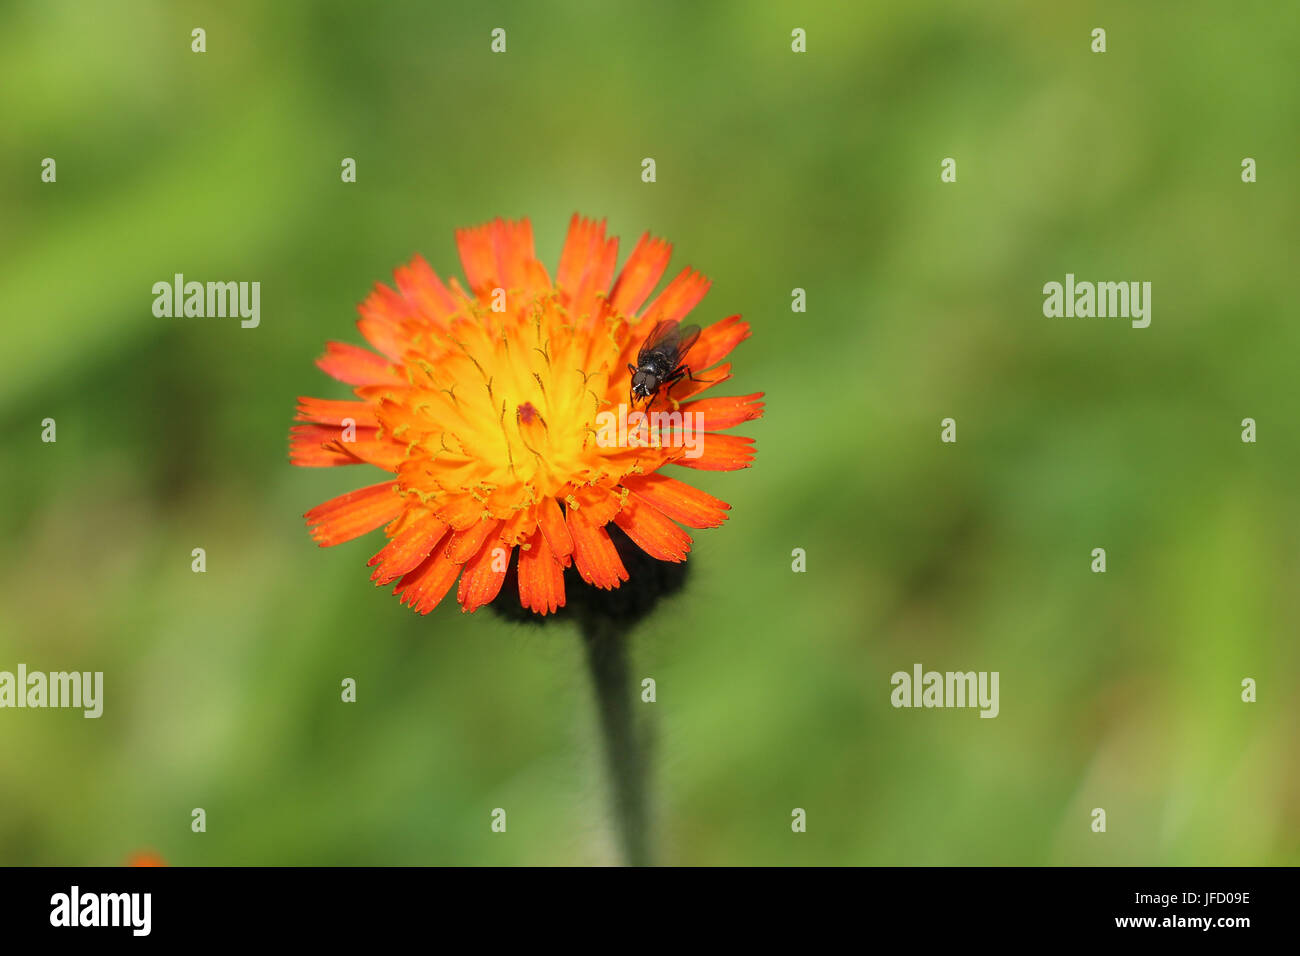 Schwarze Fliege auf einem hellen Orange Habichtskraut Blüte, Gruppe Aurantiaca, auch als Fox und Cubs Wildblumen oder Devil's Paintbrush blühen im Sommer Stockfoto